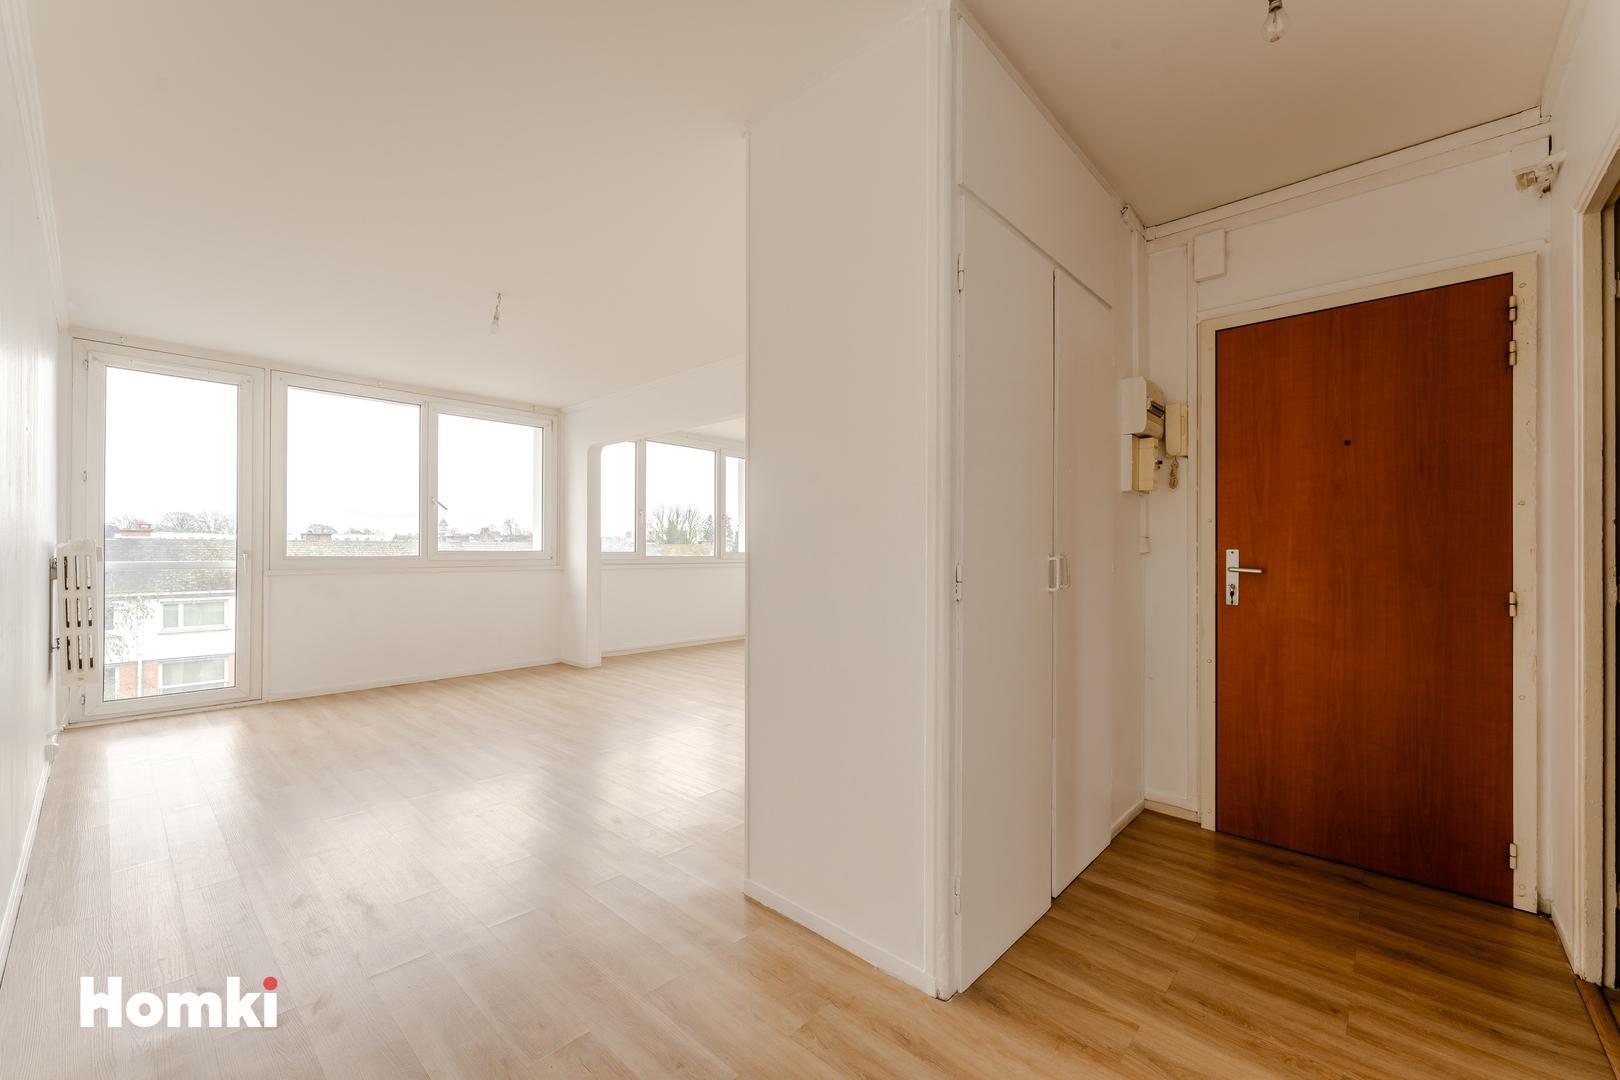 Homki - Vente Appartement  de 69.0 m² à Lys-lez-Lannoy 59390